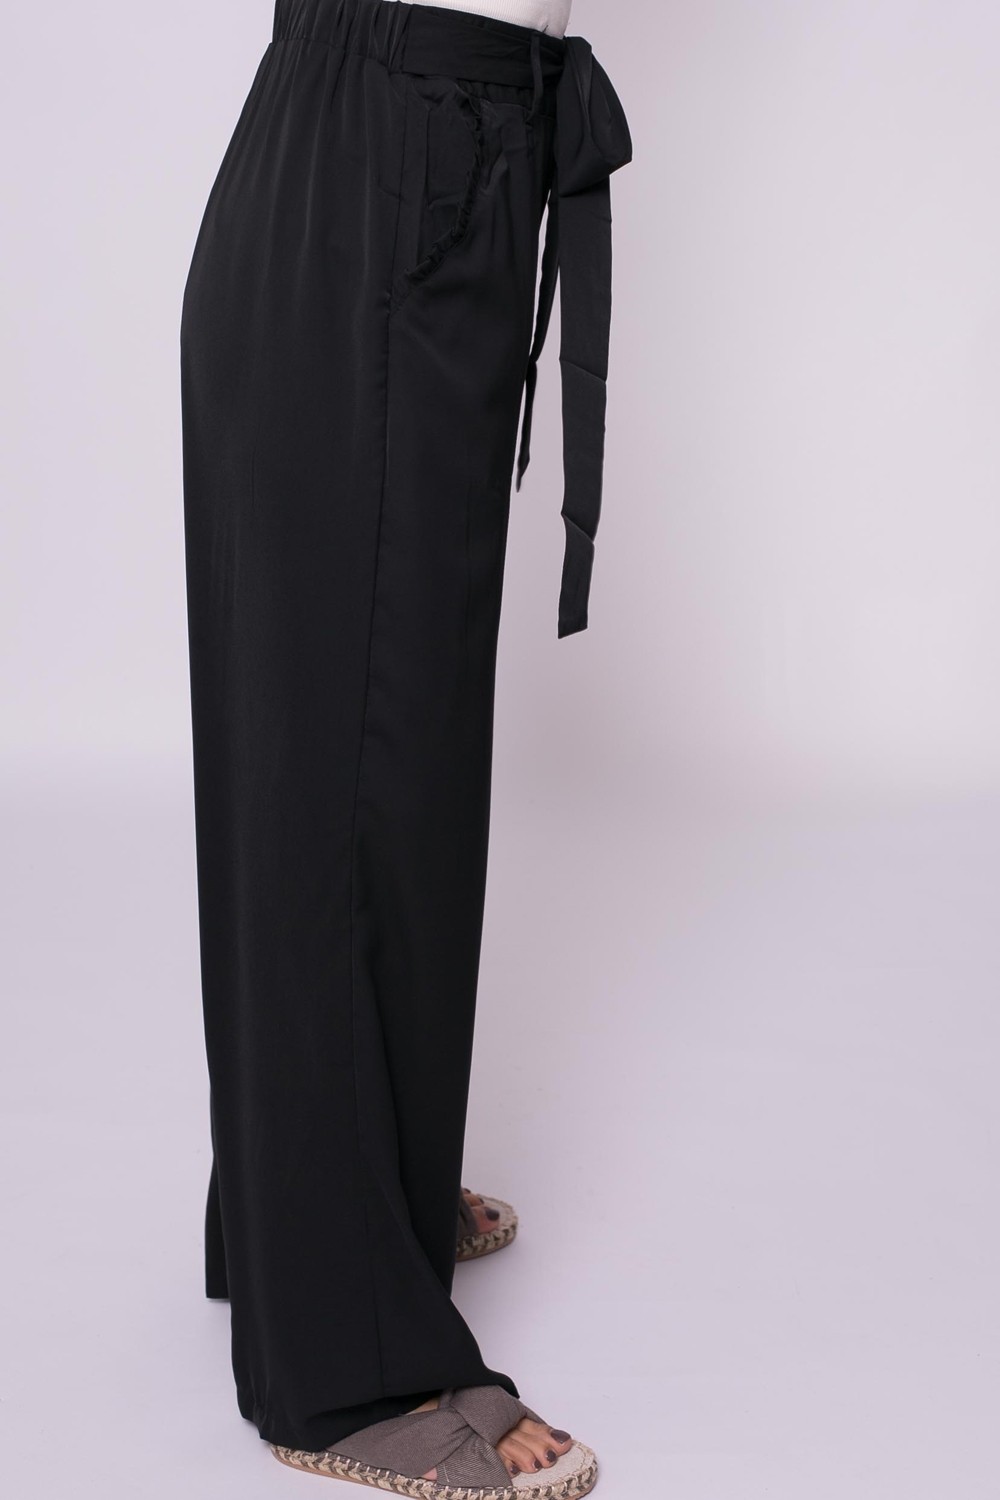 Pantalon large été noir boutique hijab femme musulmane